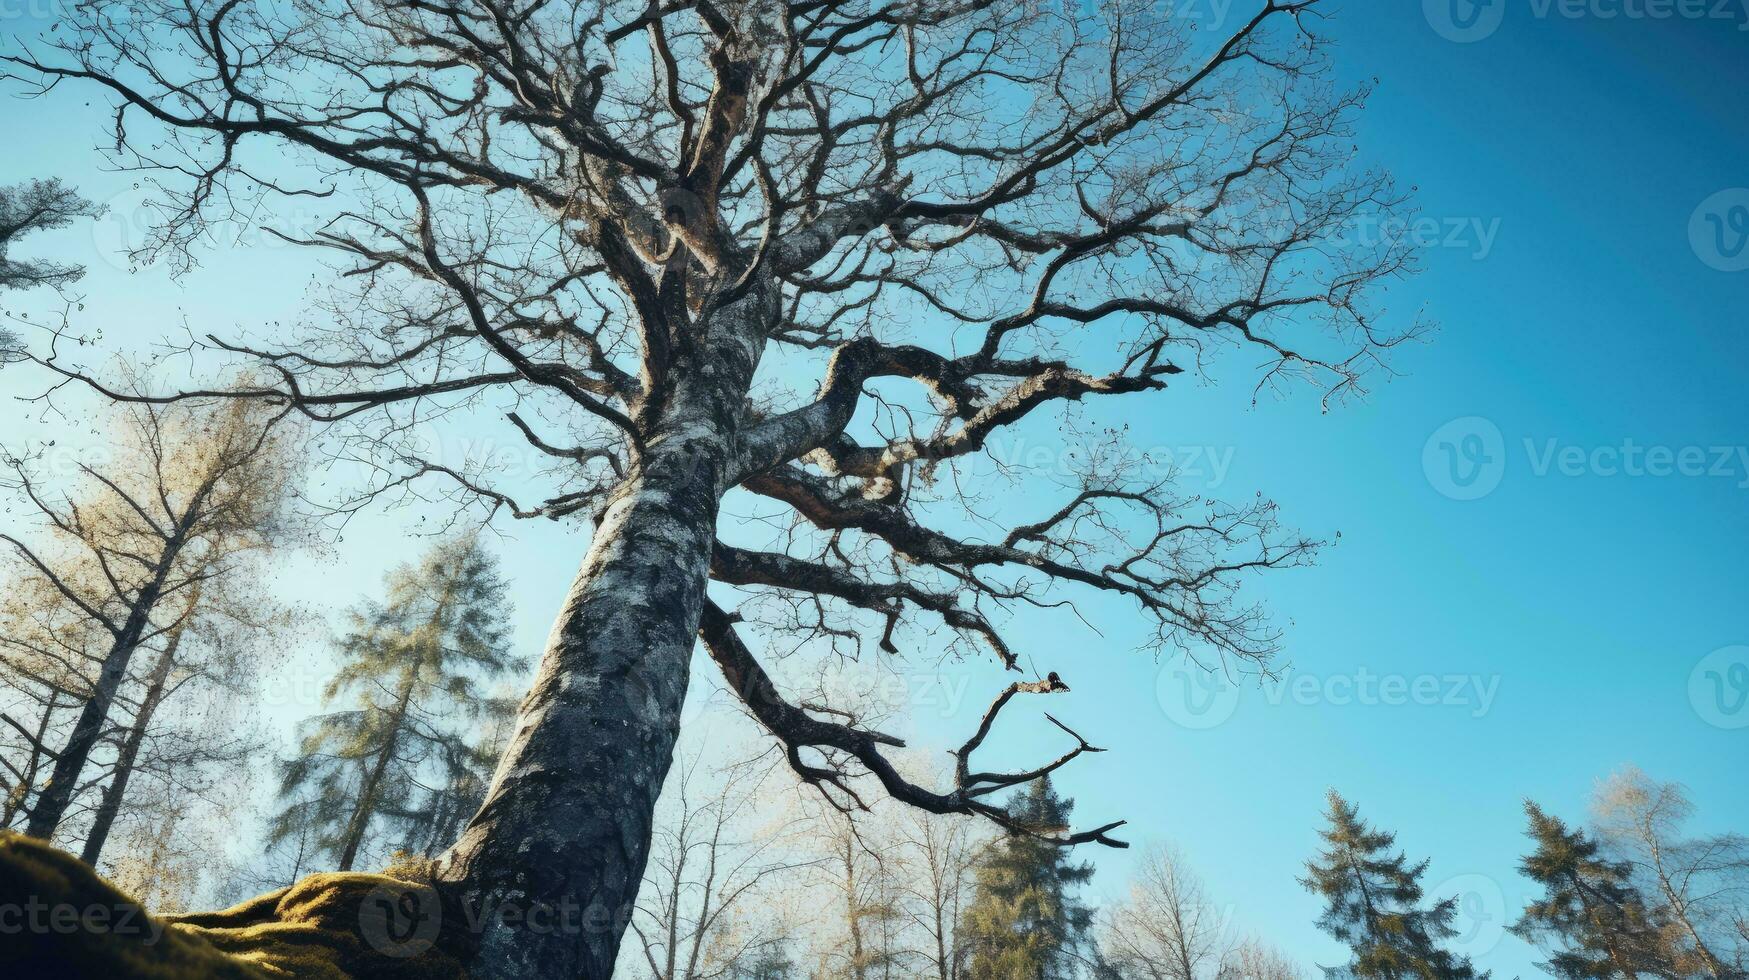 faible angle coup de sans feuilles chêne arbre contre bleu ciel de bonne heure finlandais printemps la nature conservation. silhouette concept photo